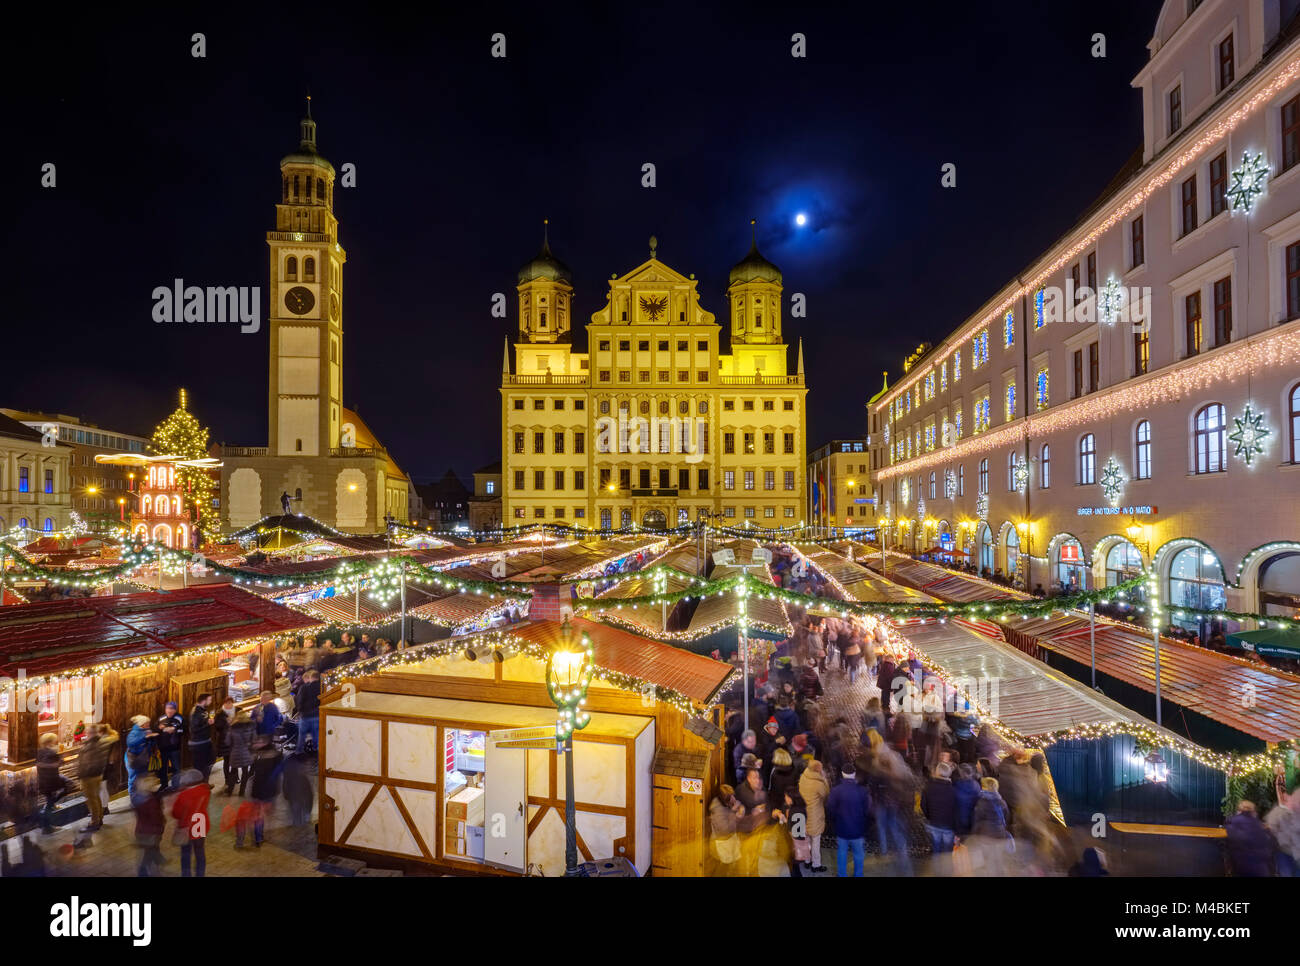 Weihnachtsmarkt, Perlach Tower und Rathaus, Rathausplatz, bei Nacht, Augsburg, Schwaben, Bayern, Deutschland Stockfoto